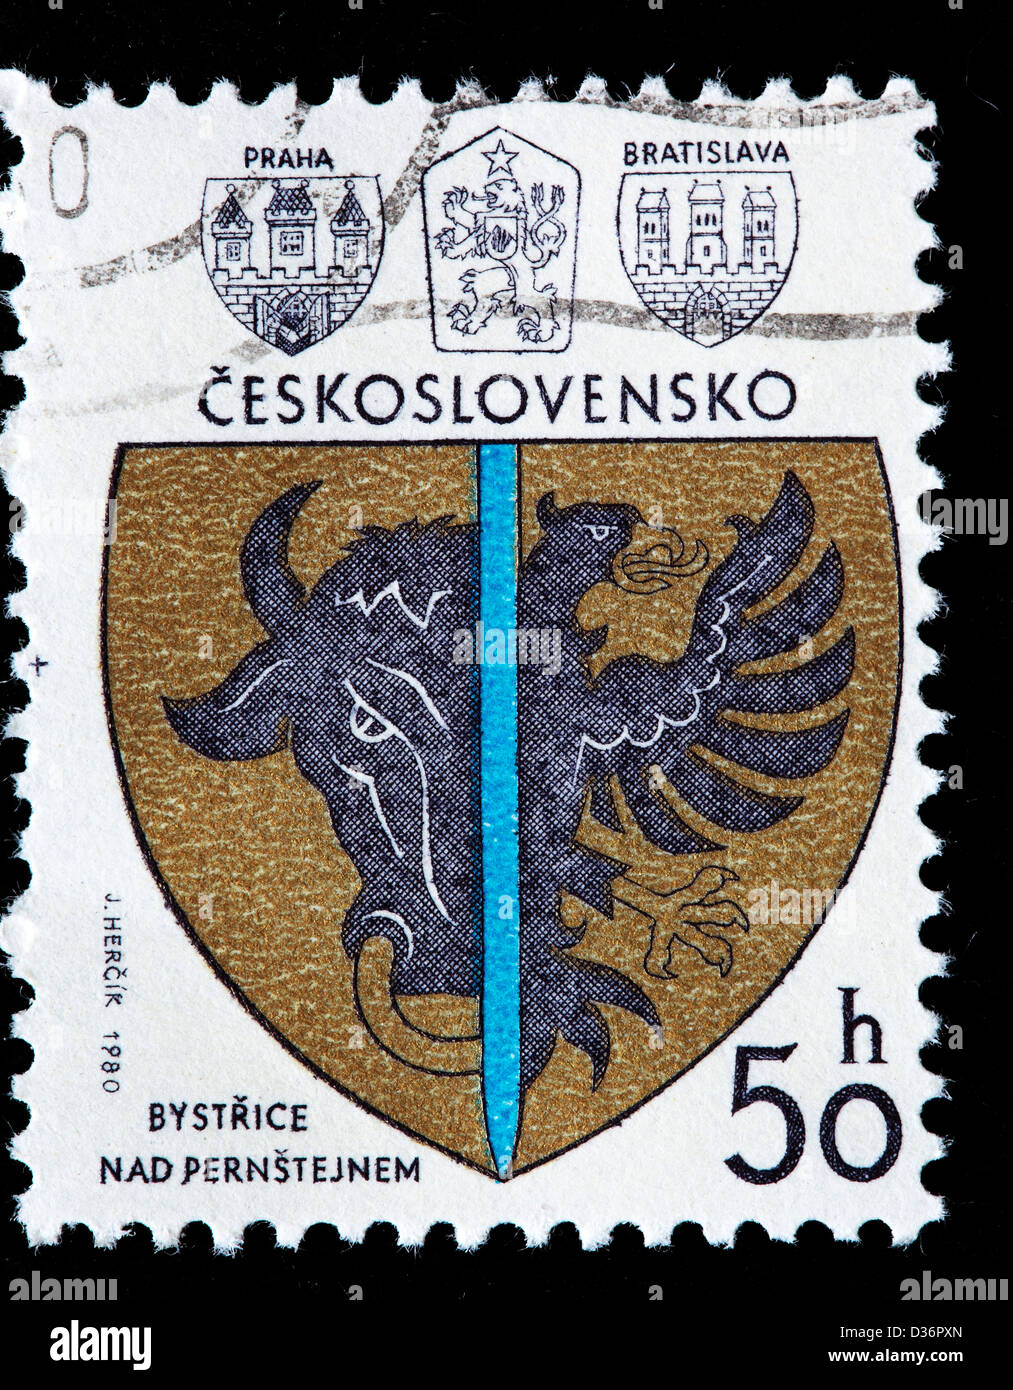 Bystrice Nad Pernstejnem, bras, timbre-poste, la Tchécoslovaquie, 1980 Banque D'Images